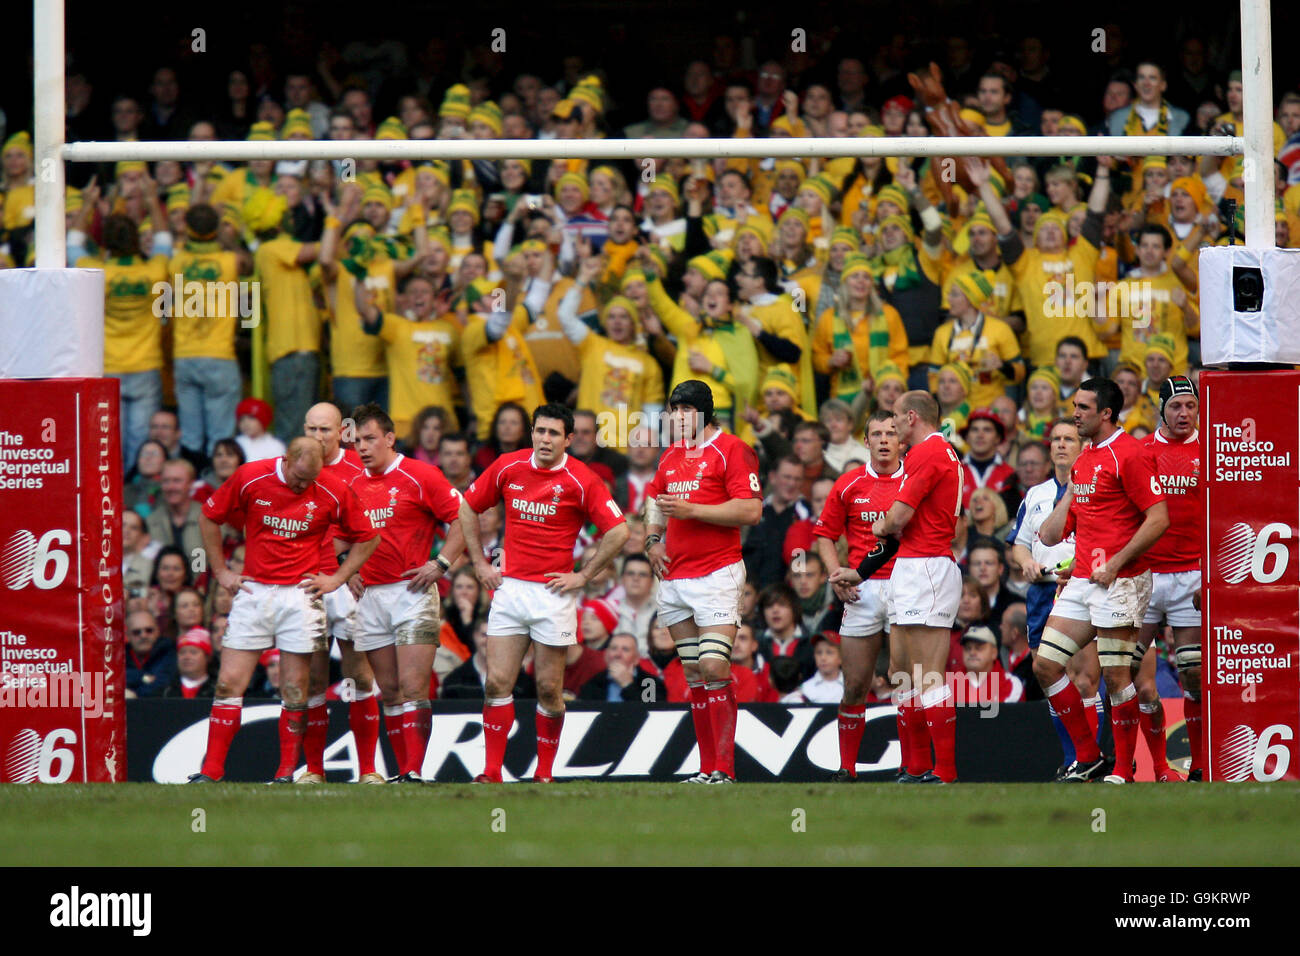 Rugby Union - partita internazionale - Galles / Australia - Millennium Stadium. I giocatori del Galles sono sconsolati davanti ai tifosi australiani Foto Stock